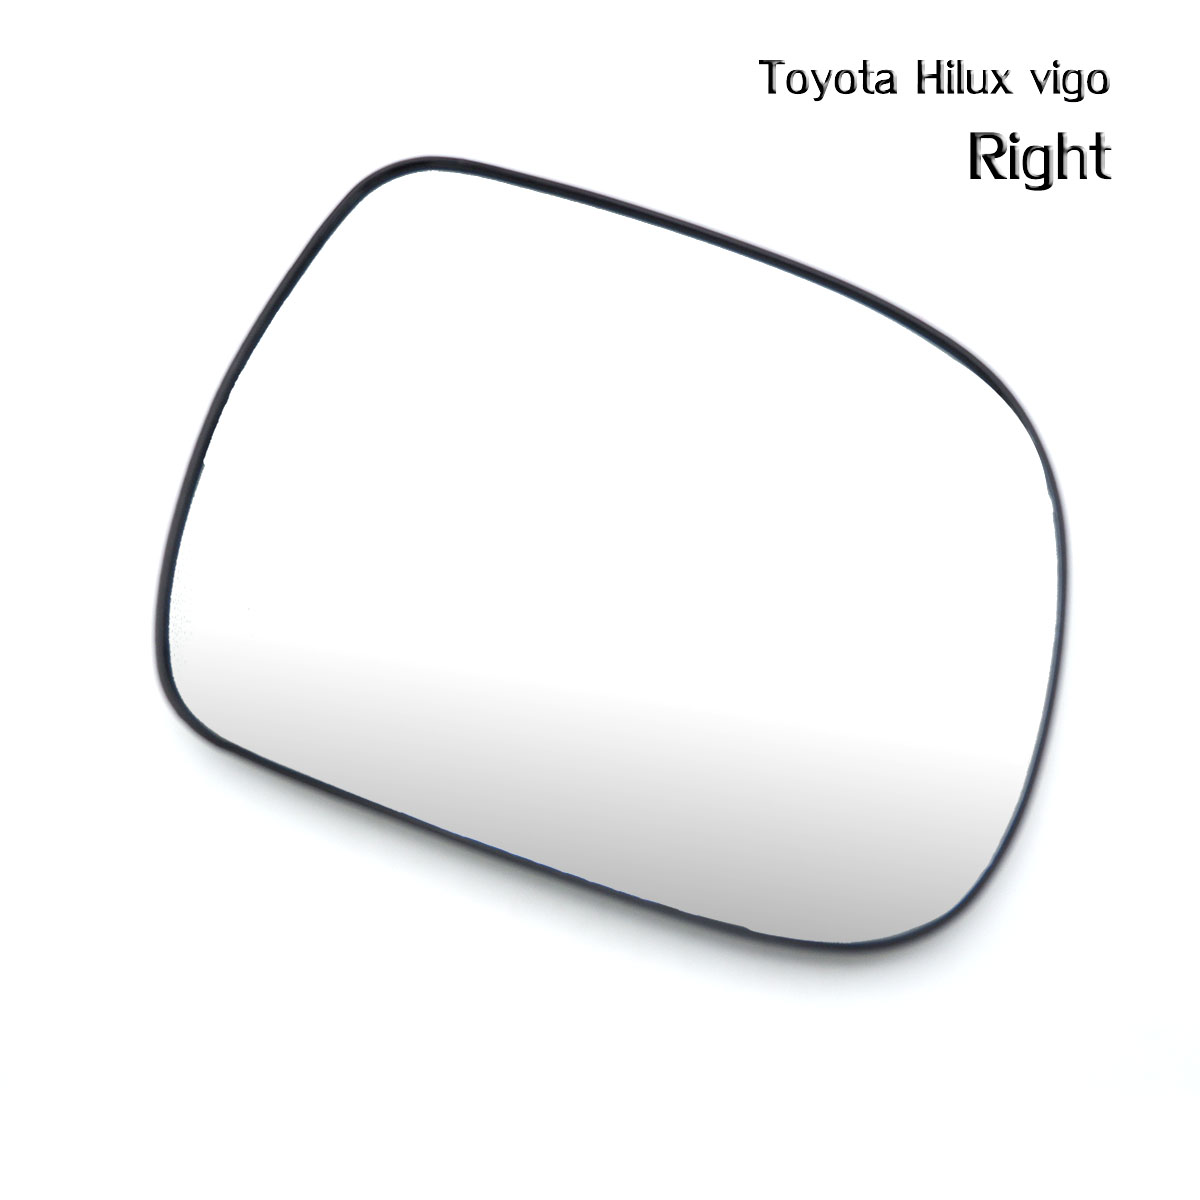 เนื้อเลนส์กระจก ข้าง ขวา Rh ใส่ Toyota Hilux Vigo Right Wing Side Door Mirror Glass Len Hilux Vigo Mk6 Toyota 2005-2014